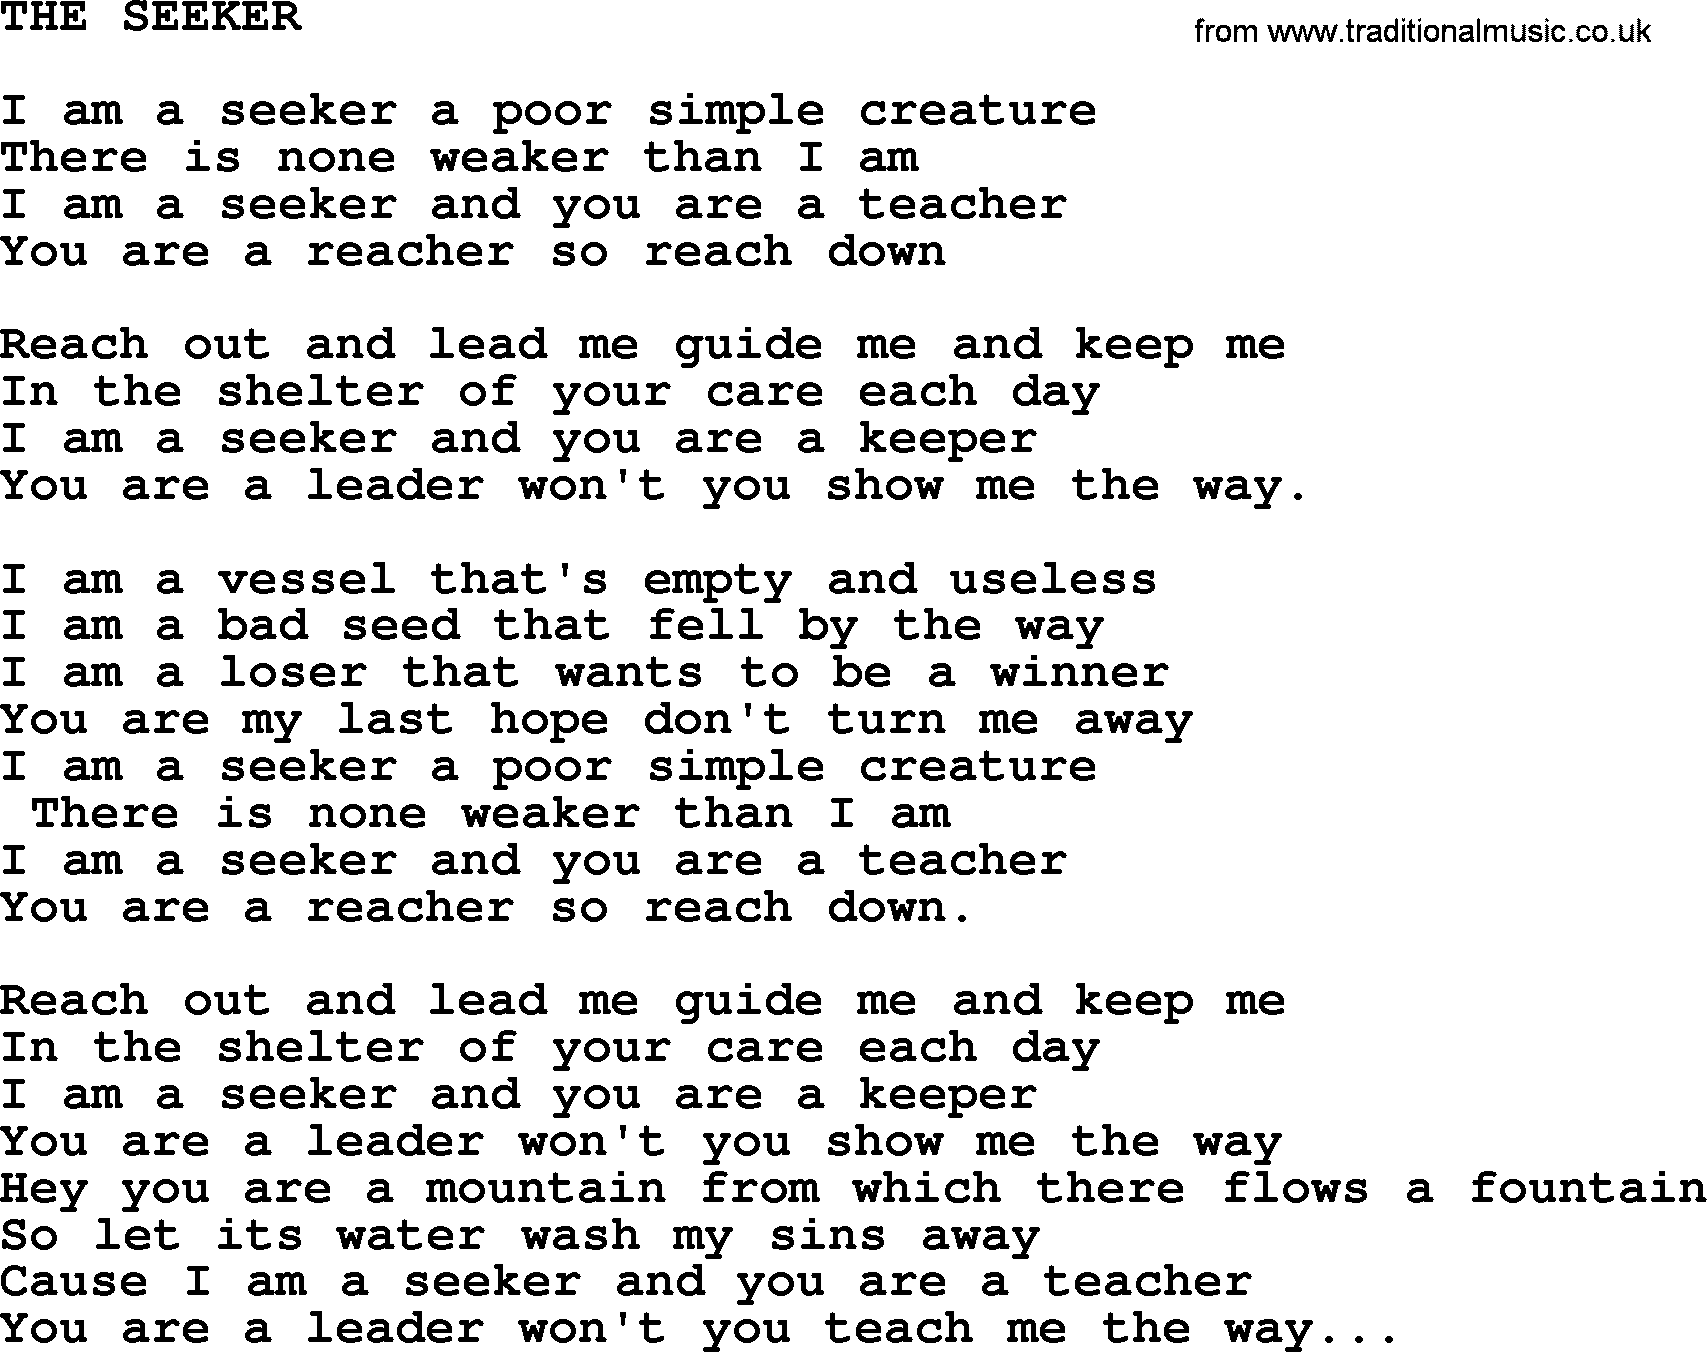 Merle Haggard song: The Seeker, lyrics.